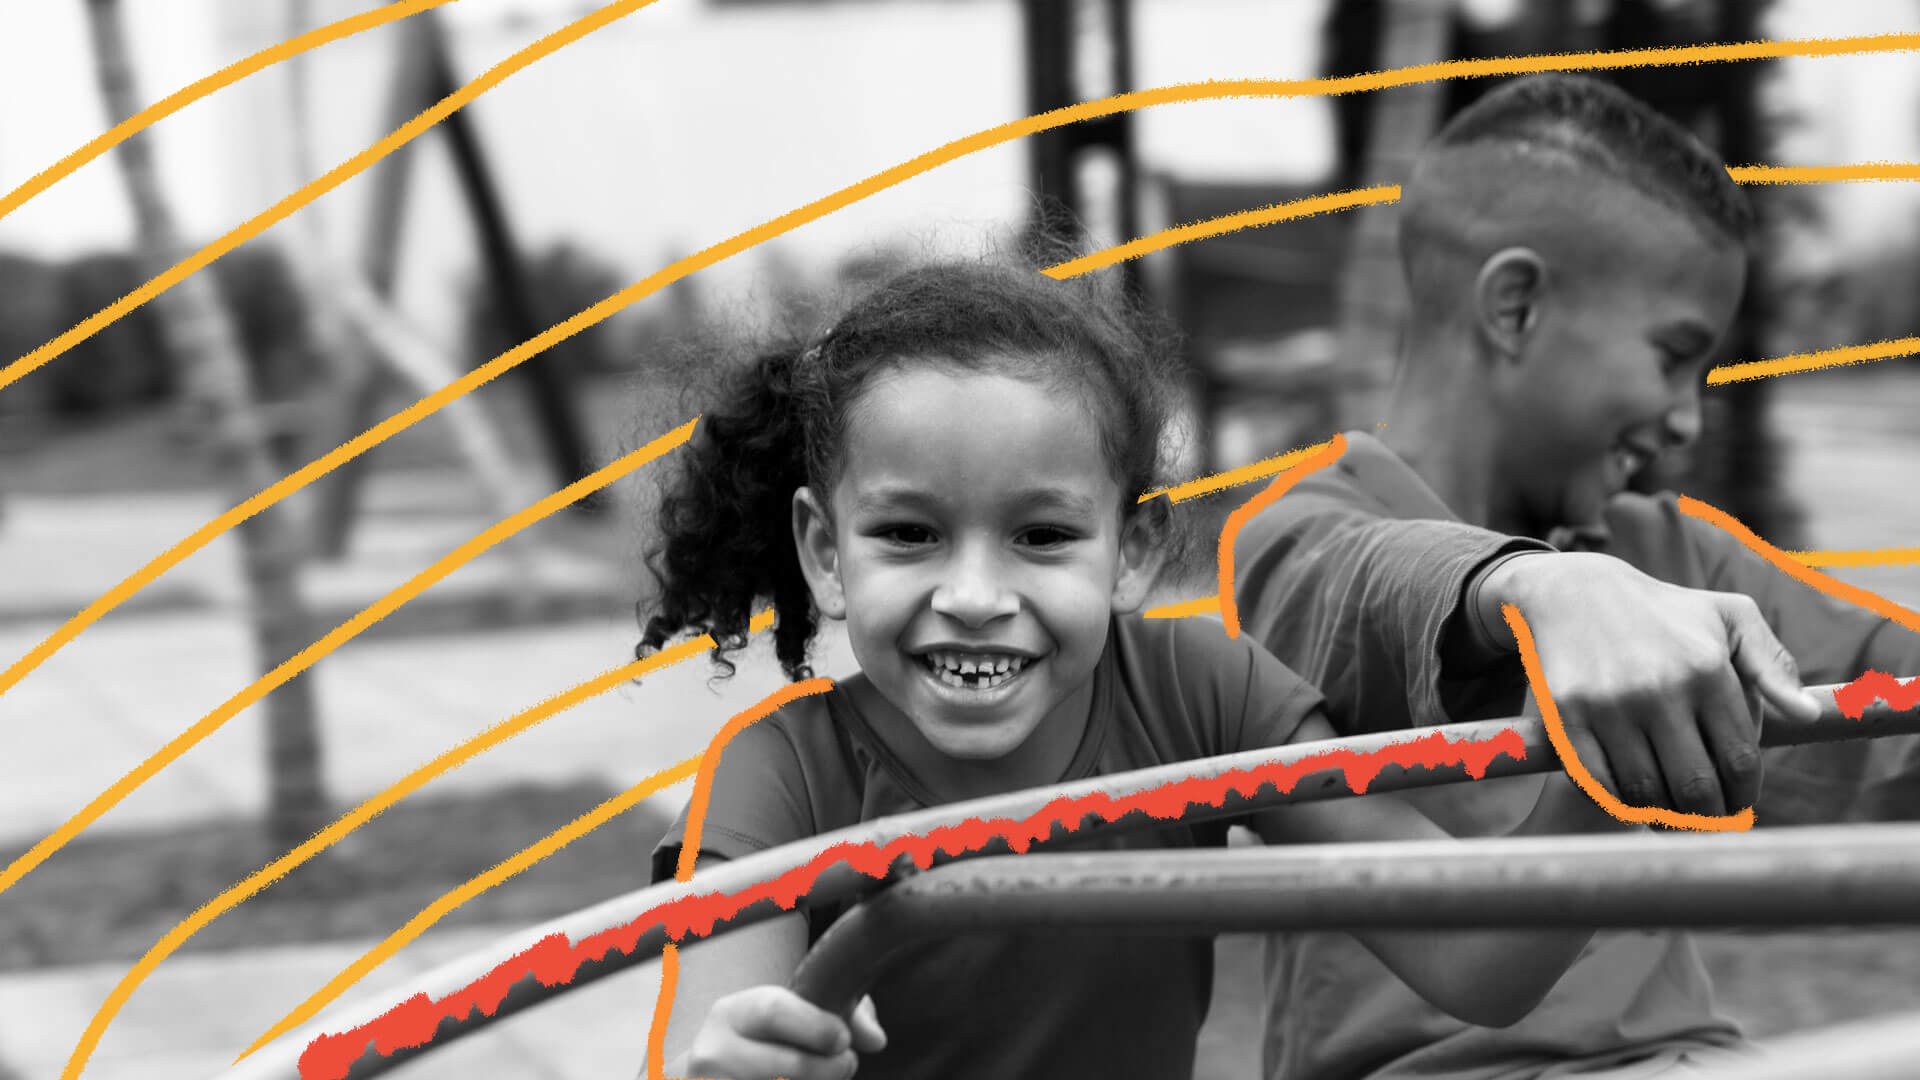 Rosto de menina sorrindo, com o cabelo preso em rabo de cavalo, brincando no gira-gira de uma escola. Foto em preto e branco.